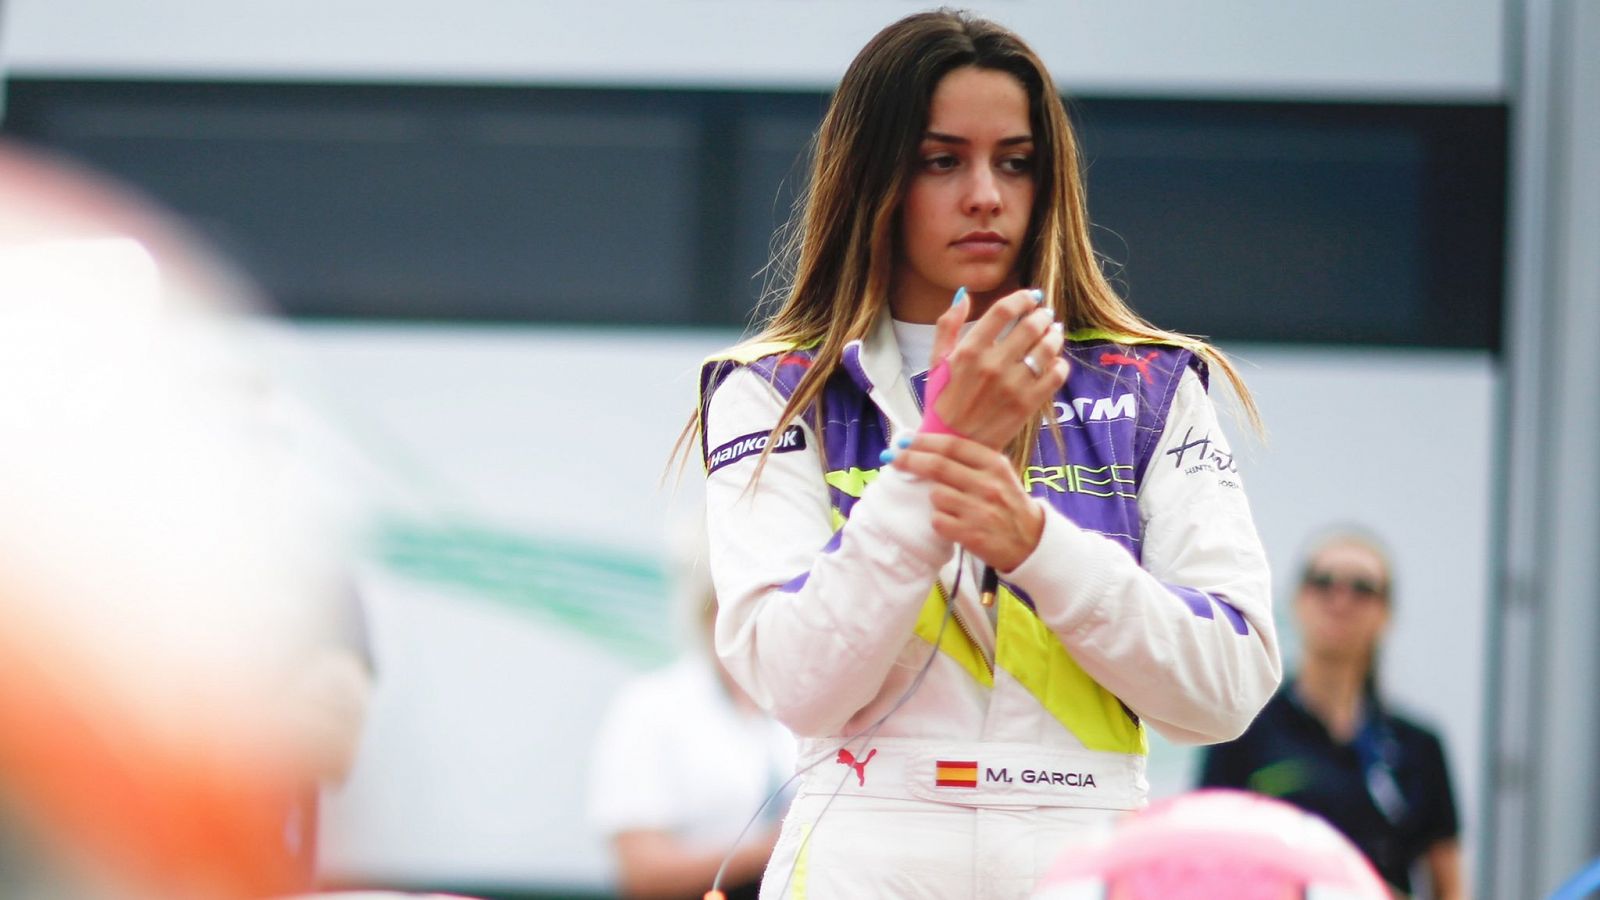 W Series | Entrevista con Marta García: "En un futuro próximo podría haber una Fórmula 1 mixta"